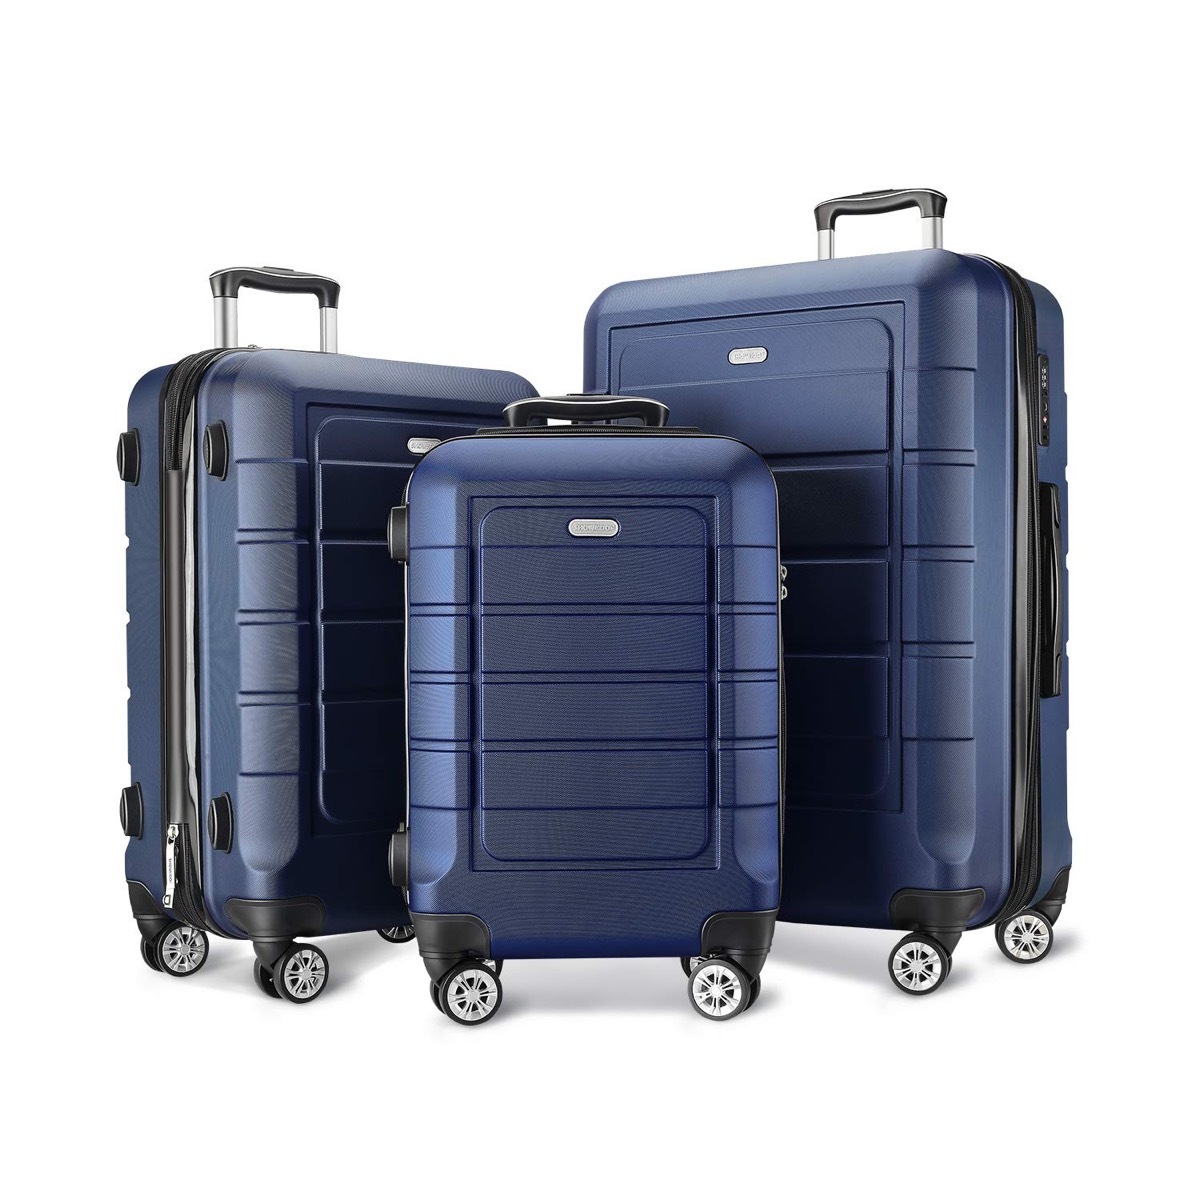 Blue luggage 3-set